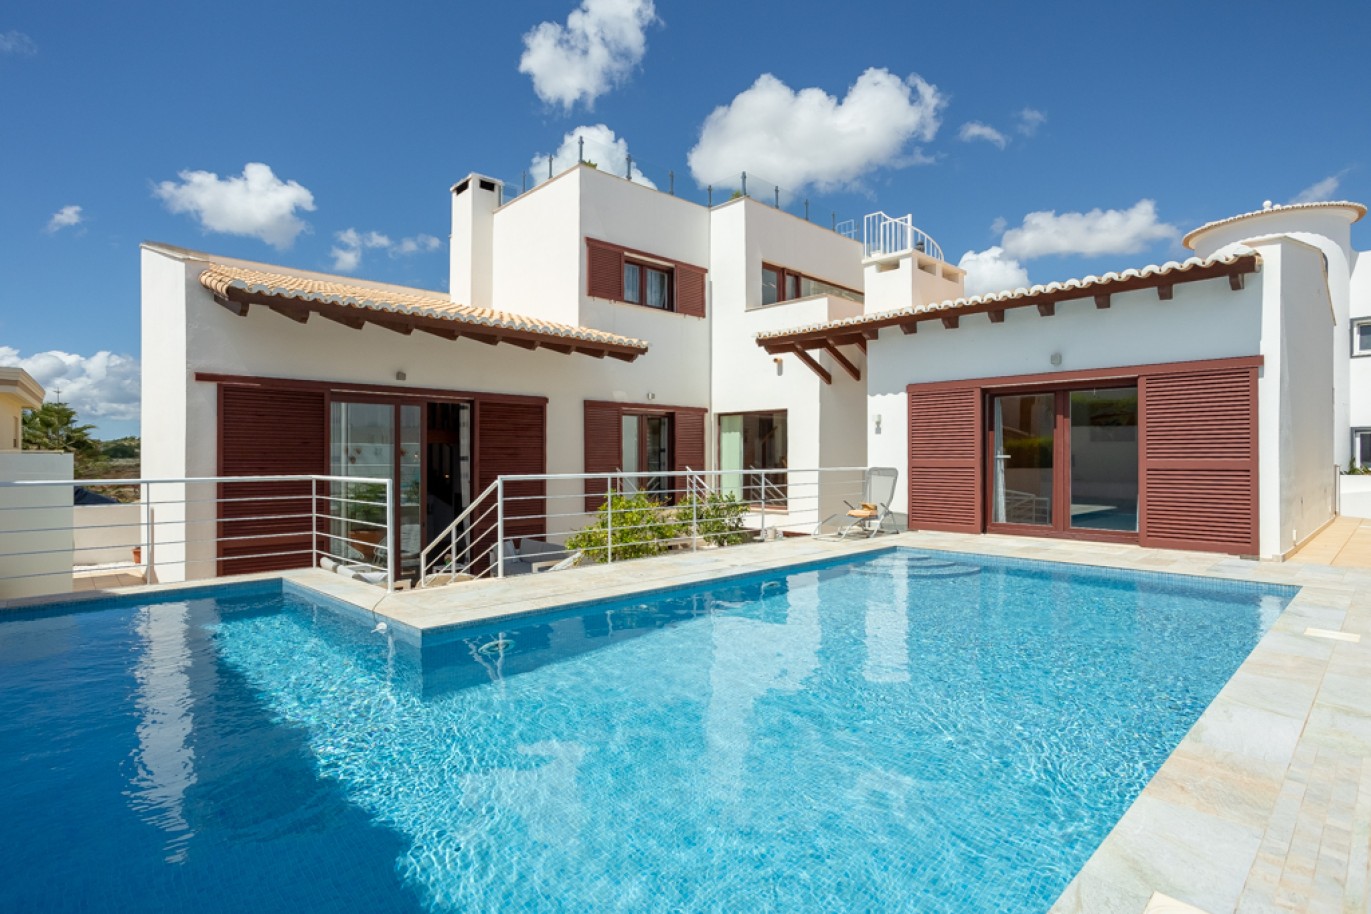 fantastique-villa-de-5-chambres-avec-piscine-a-vendre-a-lagos-algarve